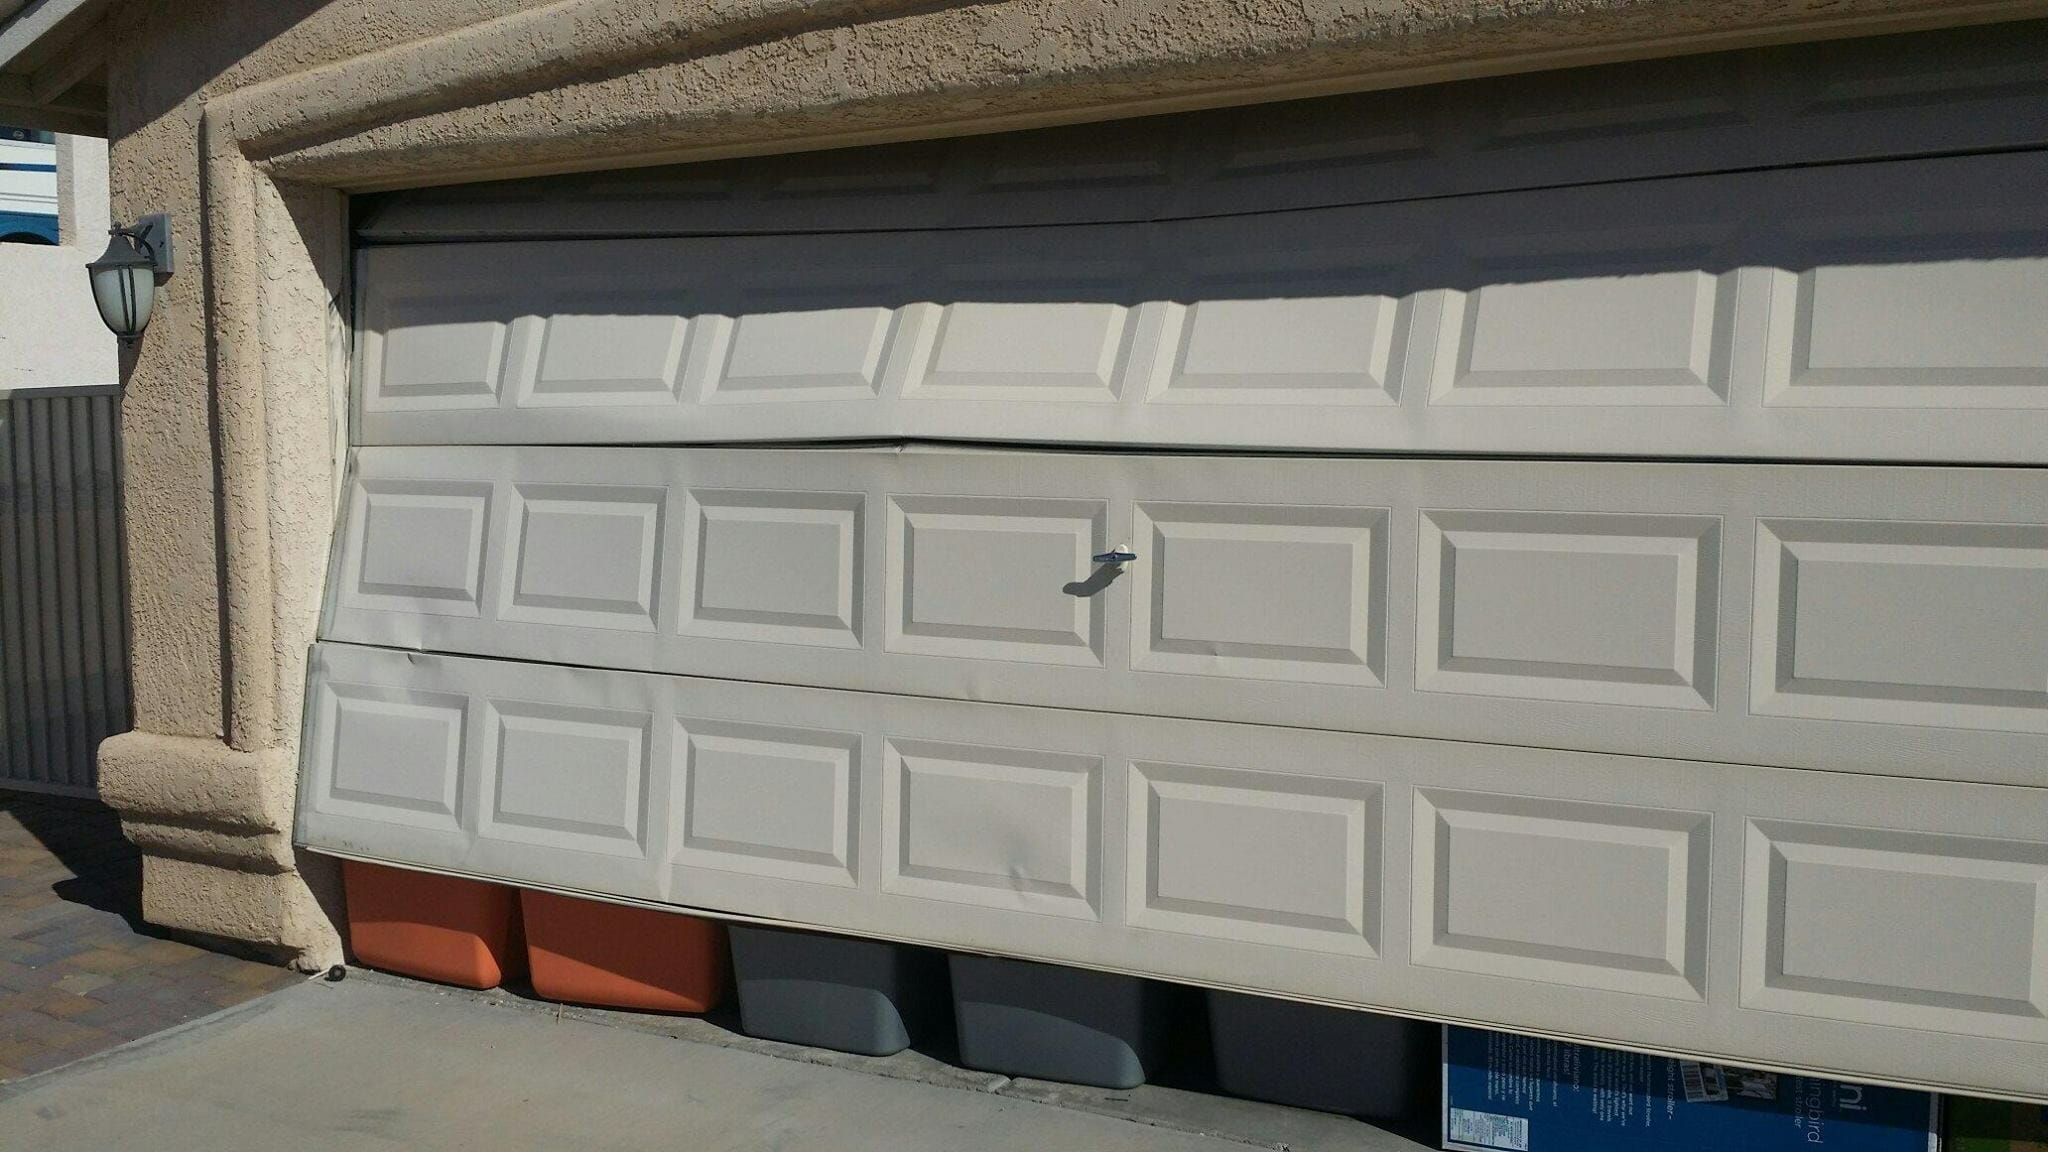 How To Fix Dent In Garage Door